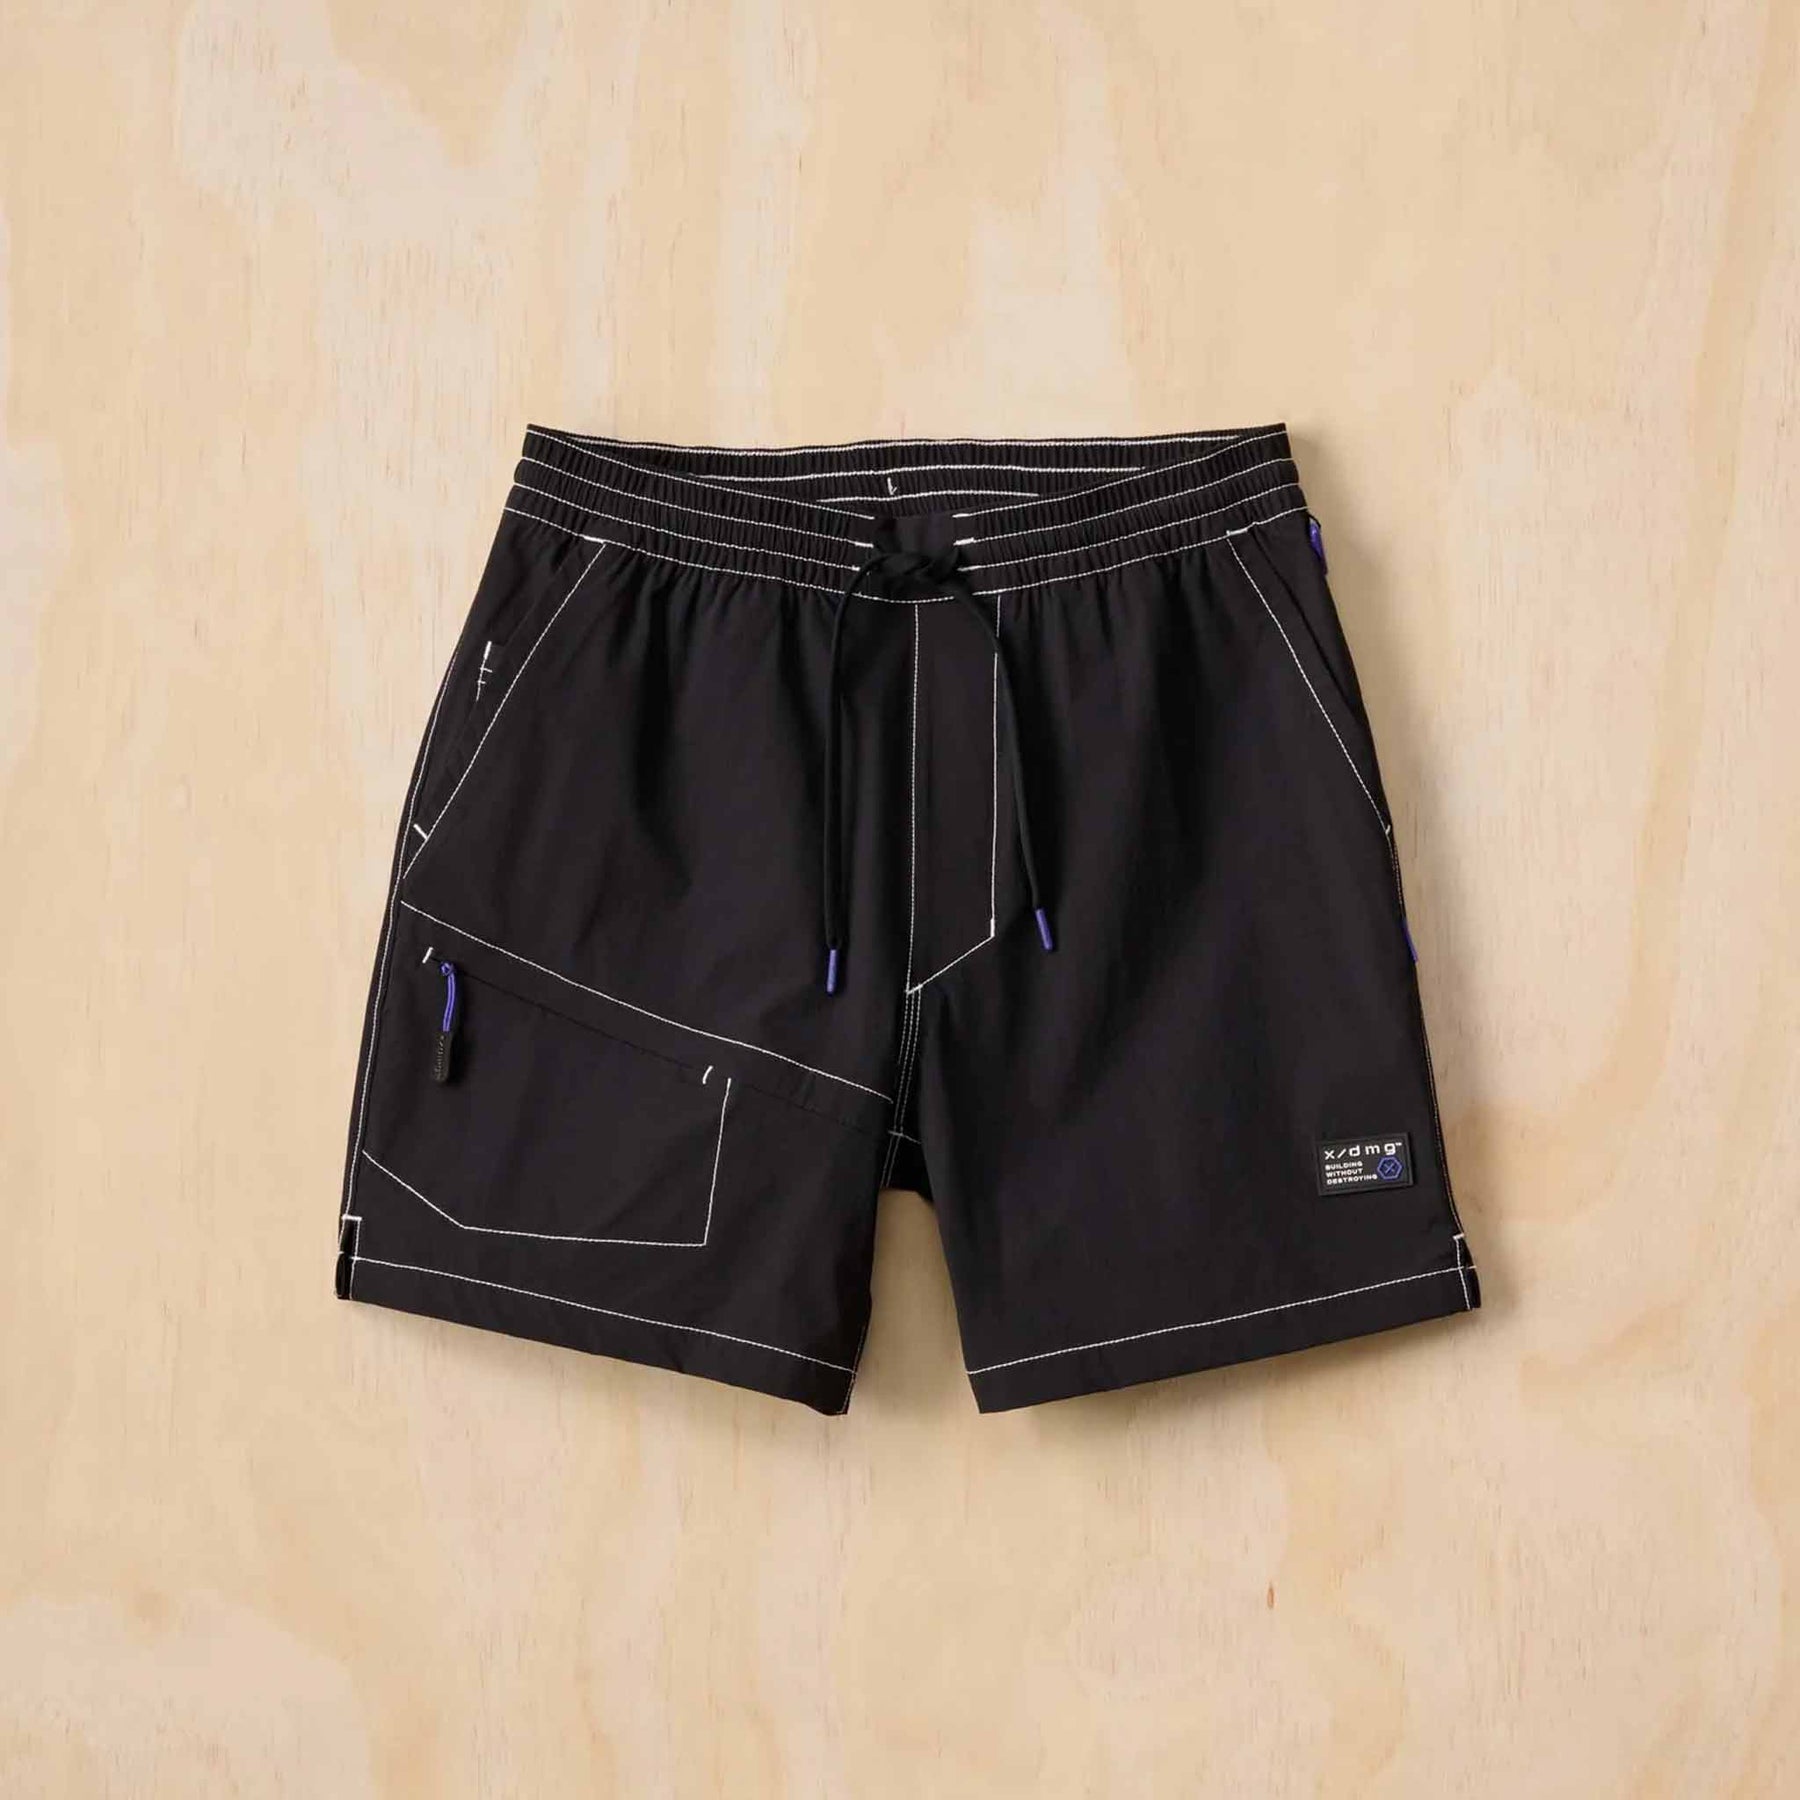 x/dmg stretch waist shorts in black white